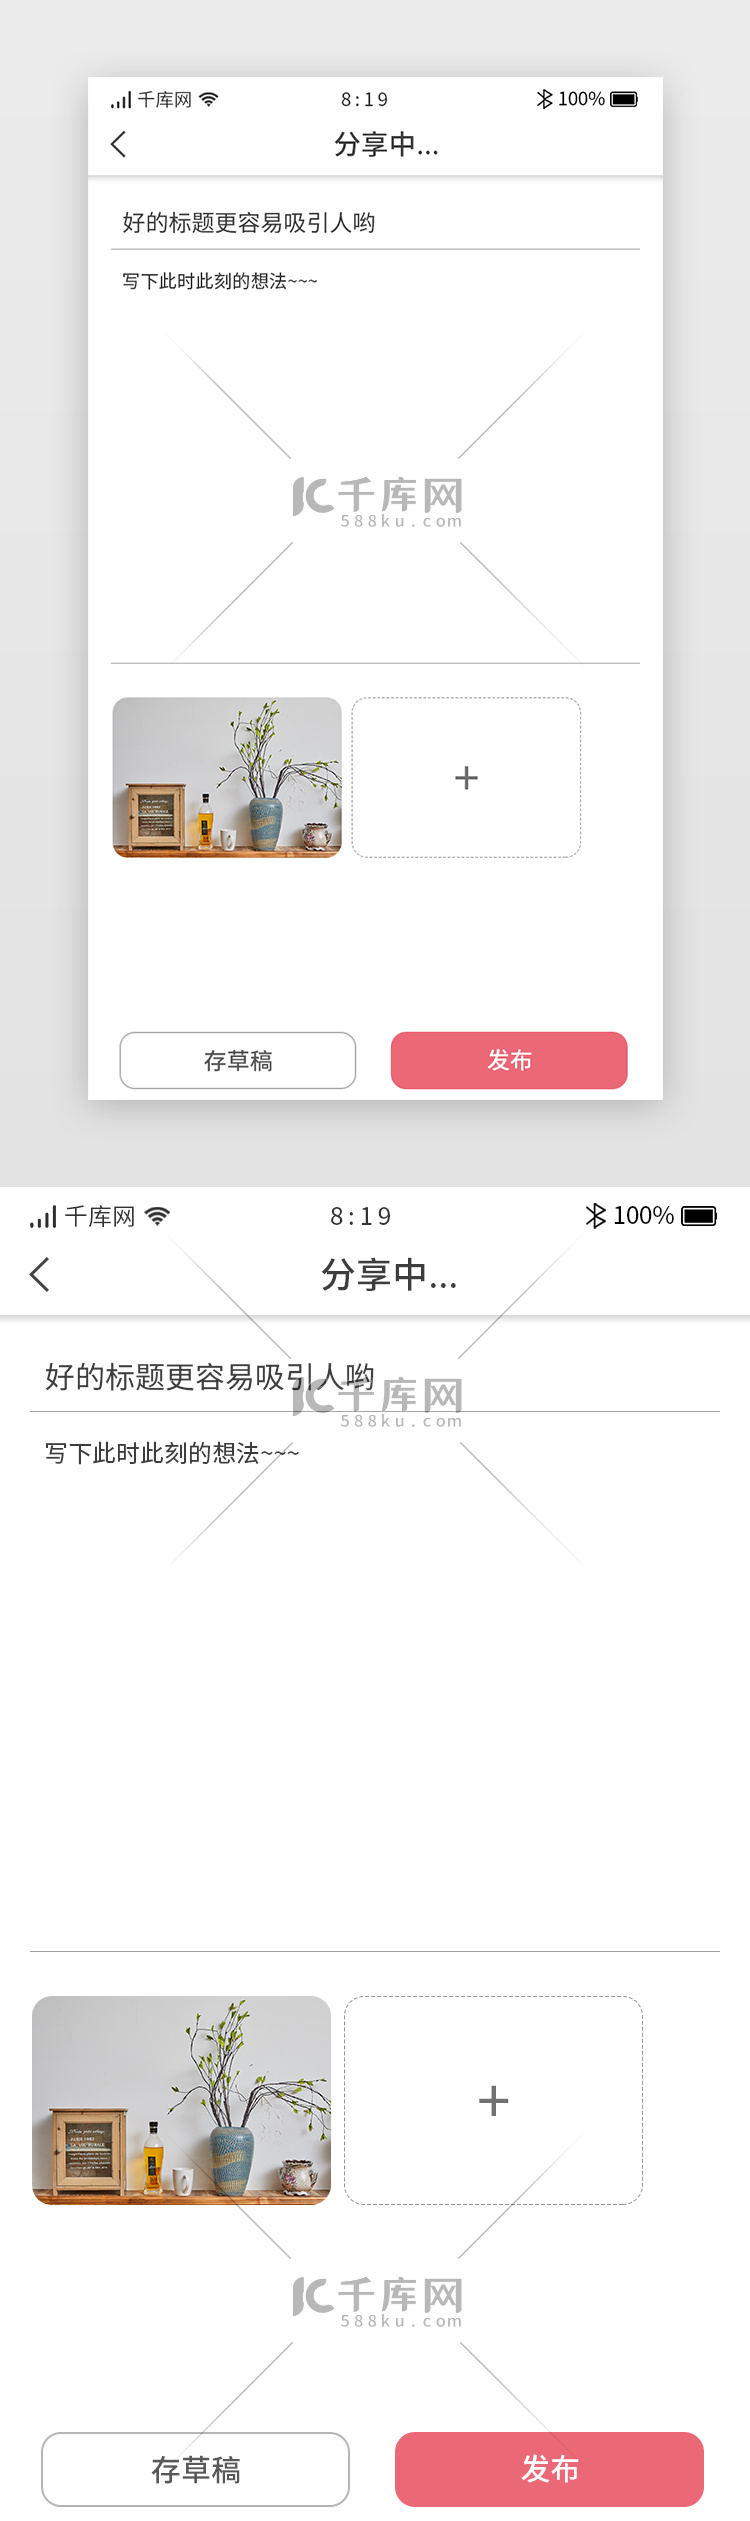 卡片综合类社交app发布动态详情页